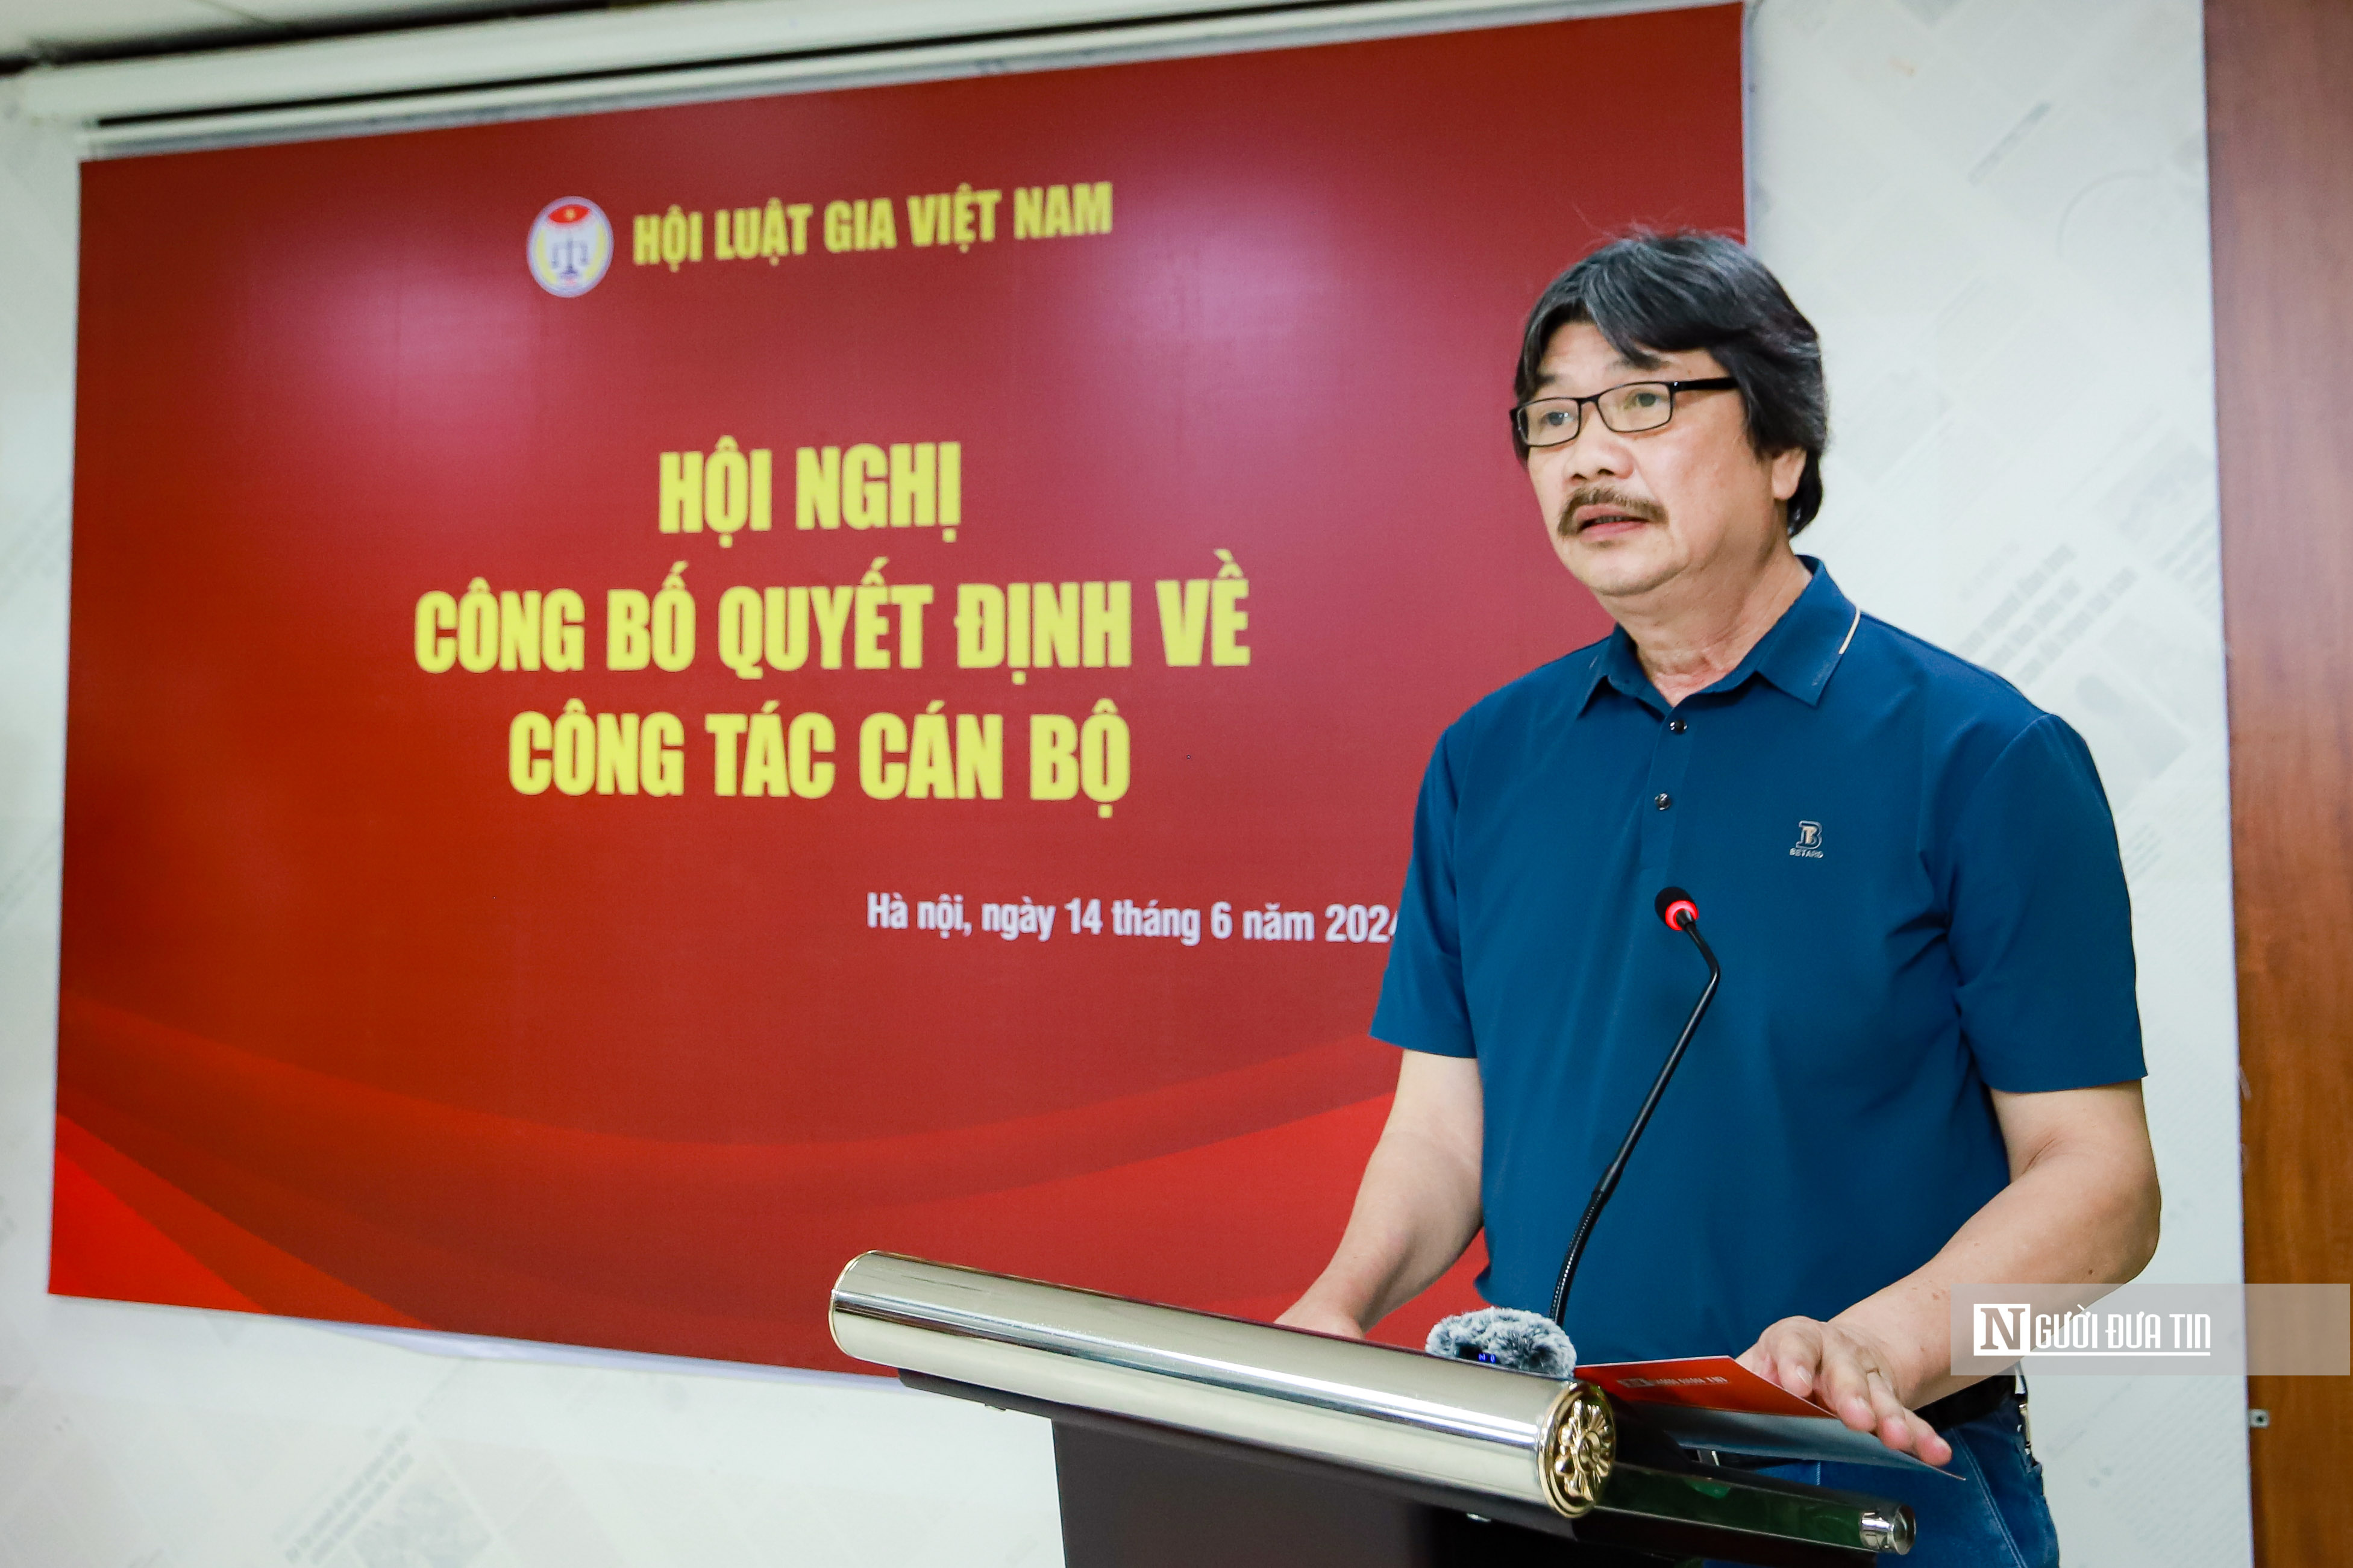 Tiêu điểm - Nhà báo Phạm Quốc Huy giữ chức Tổng biên tập Tạp chí Đời sống và Pháp luật